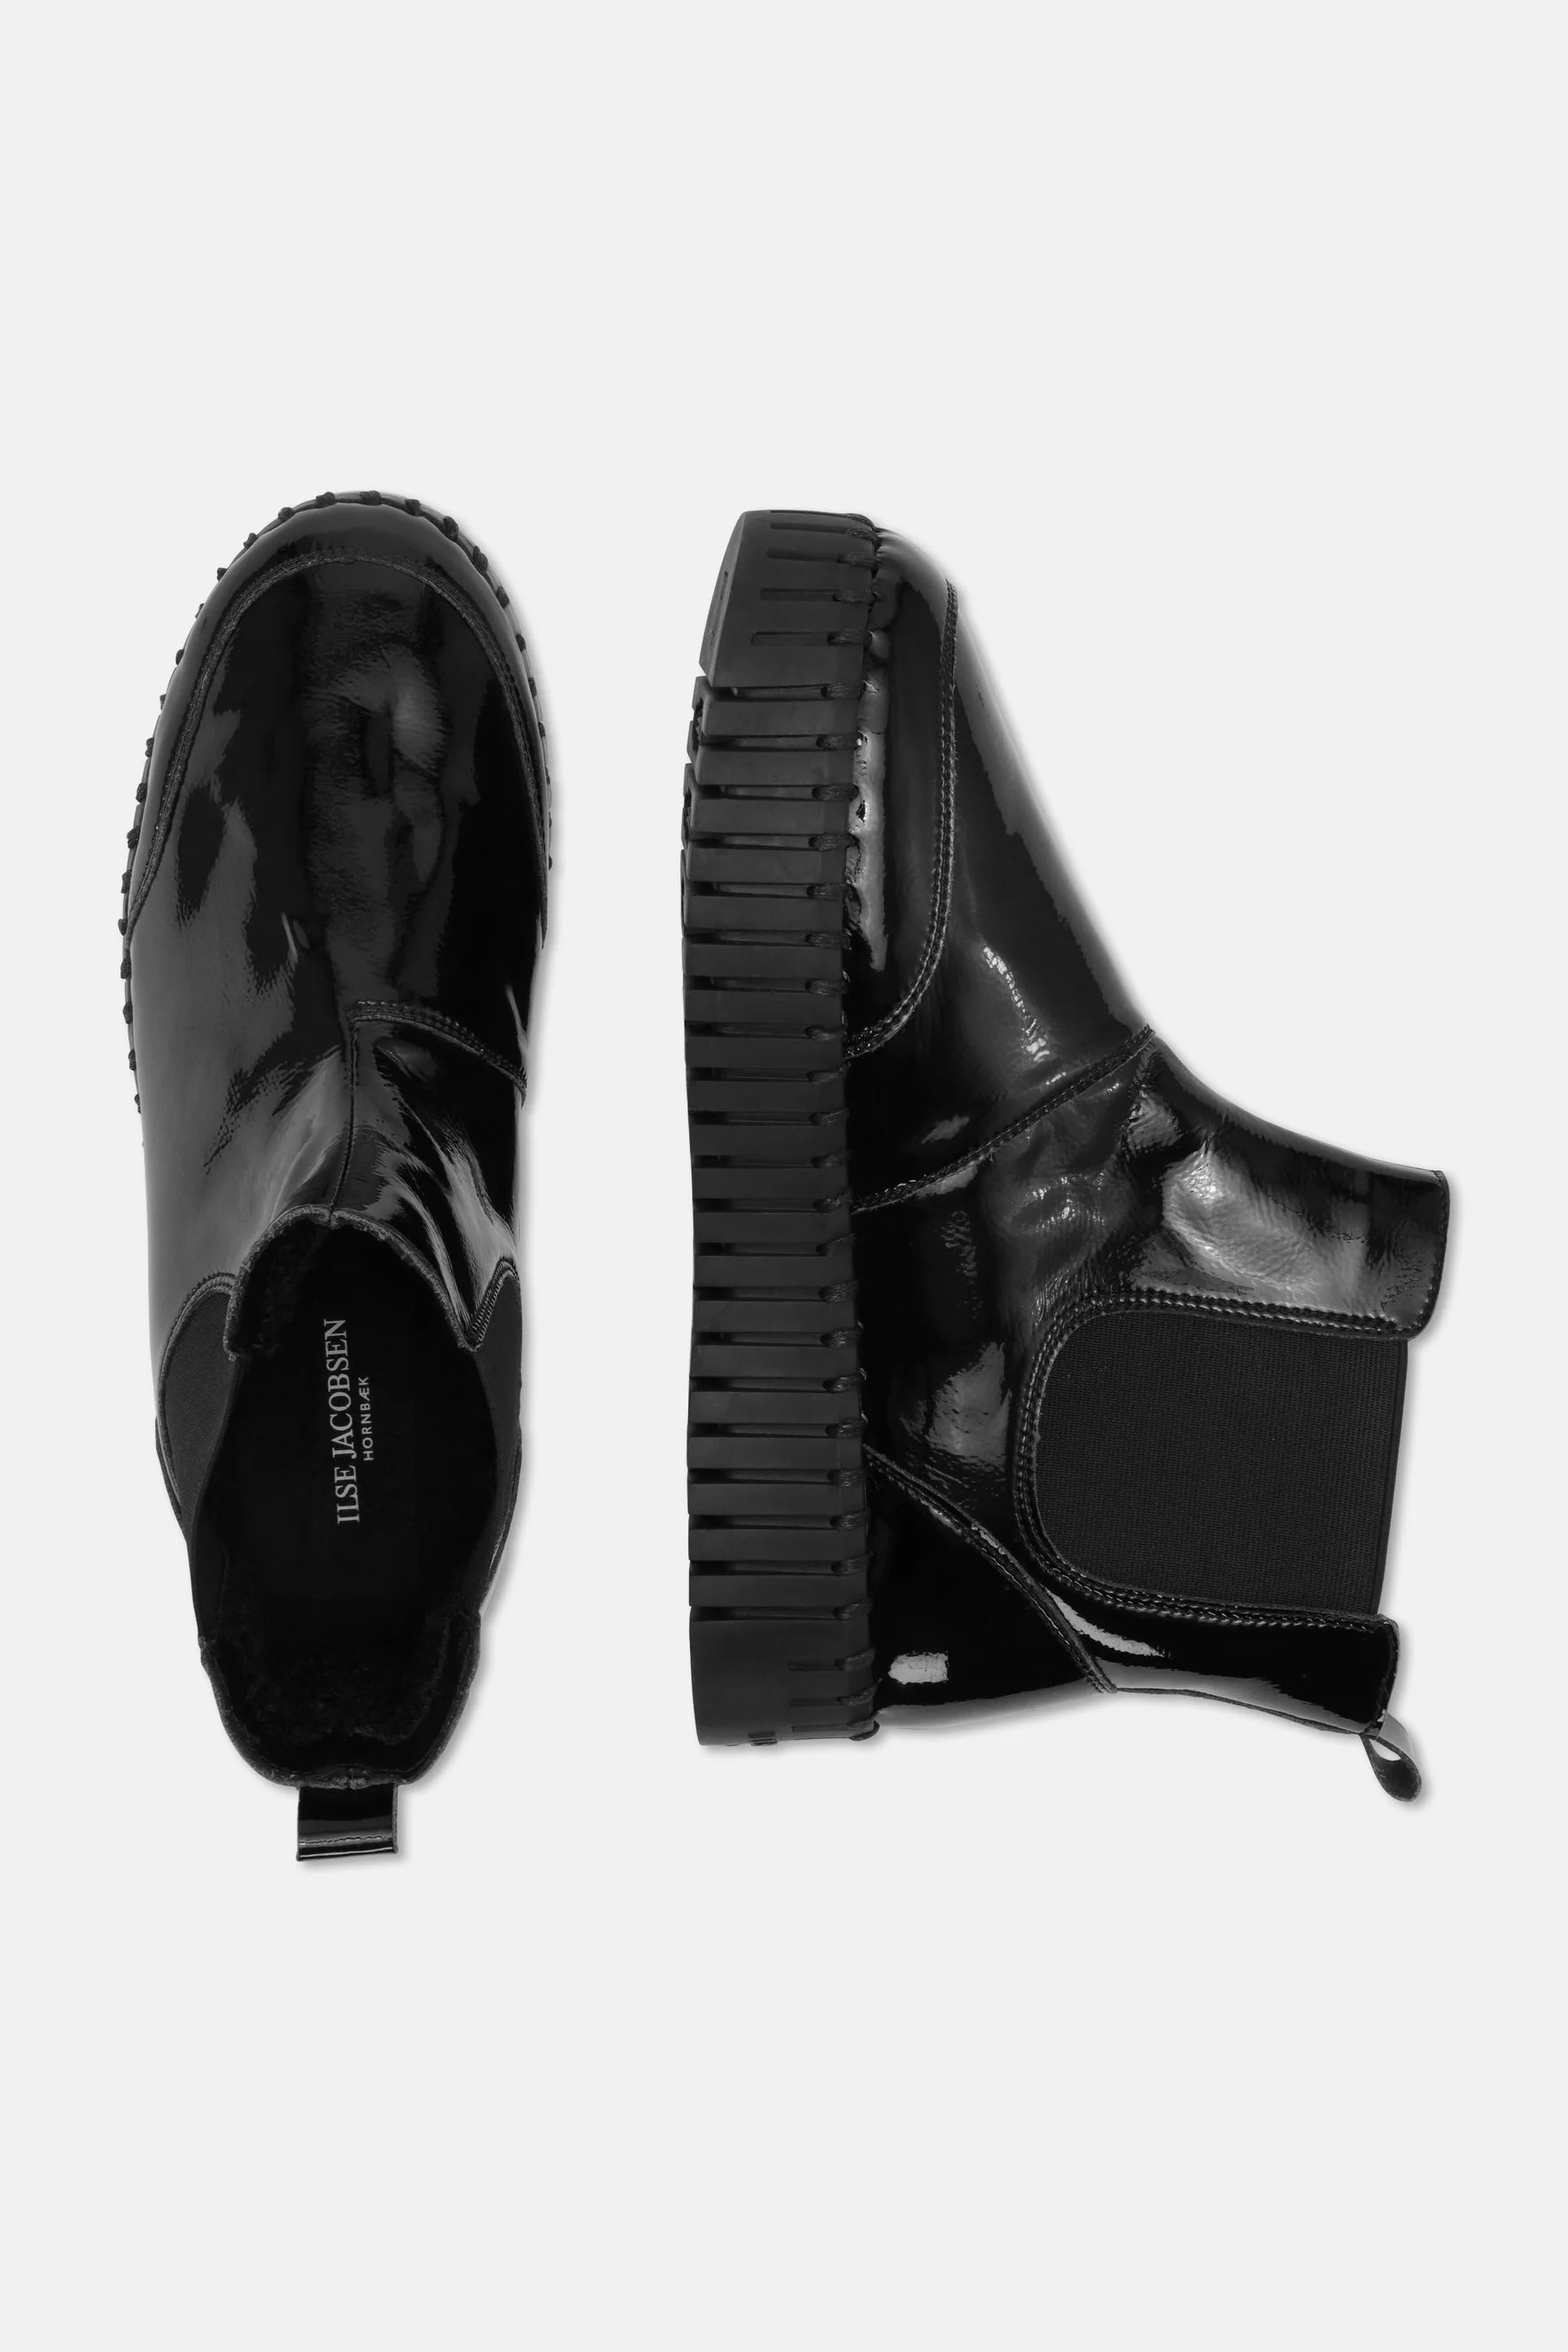 Ilse Jacobsen Tulip Ankle Boot - Gloss Black